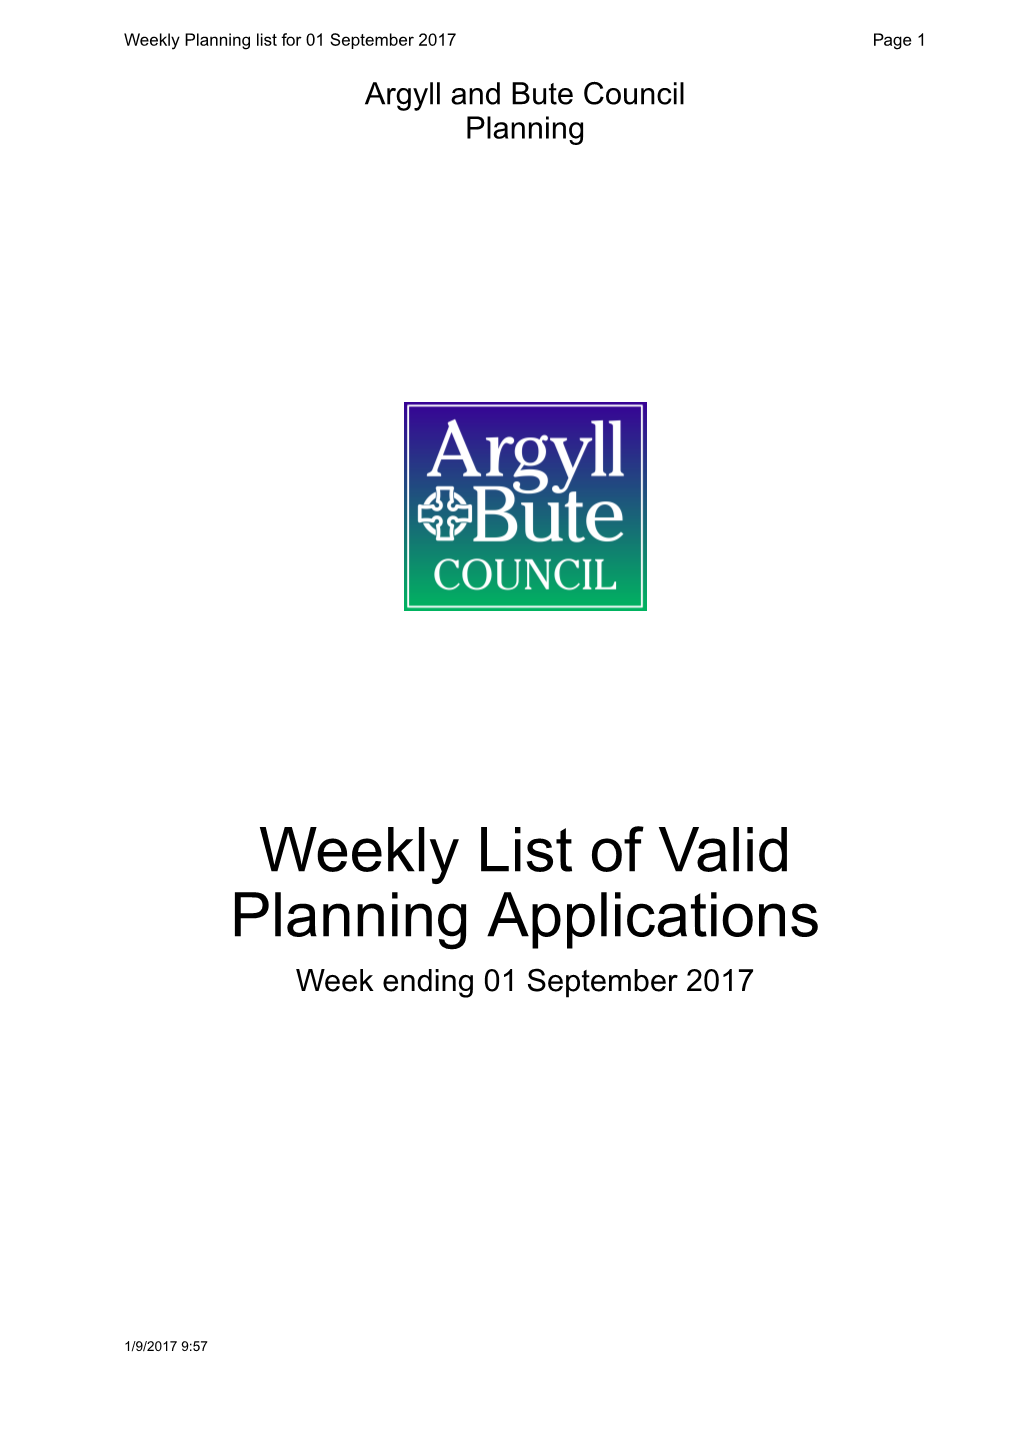 Weekly List of Valid Planning Applications Week Ending 01 September 2017